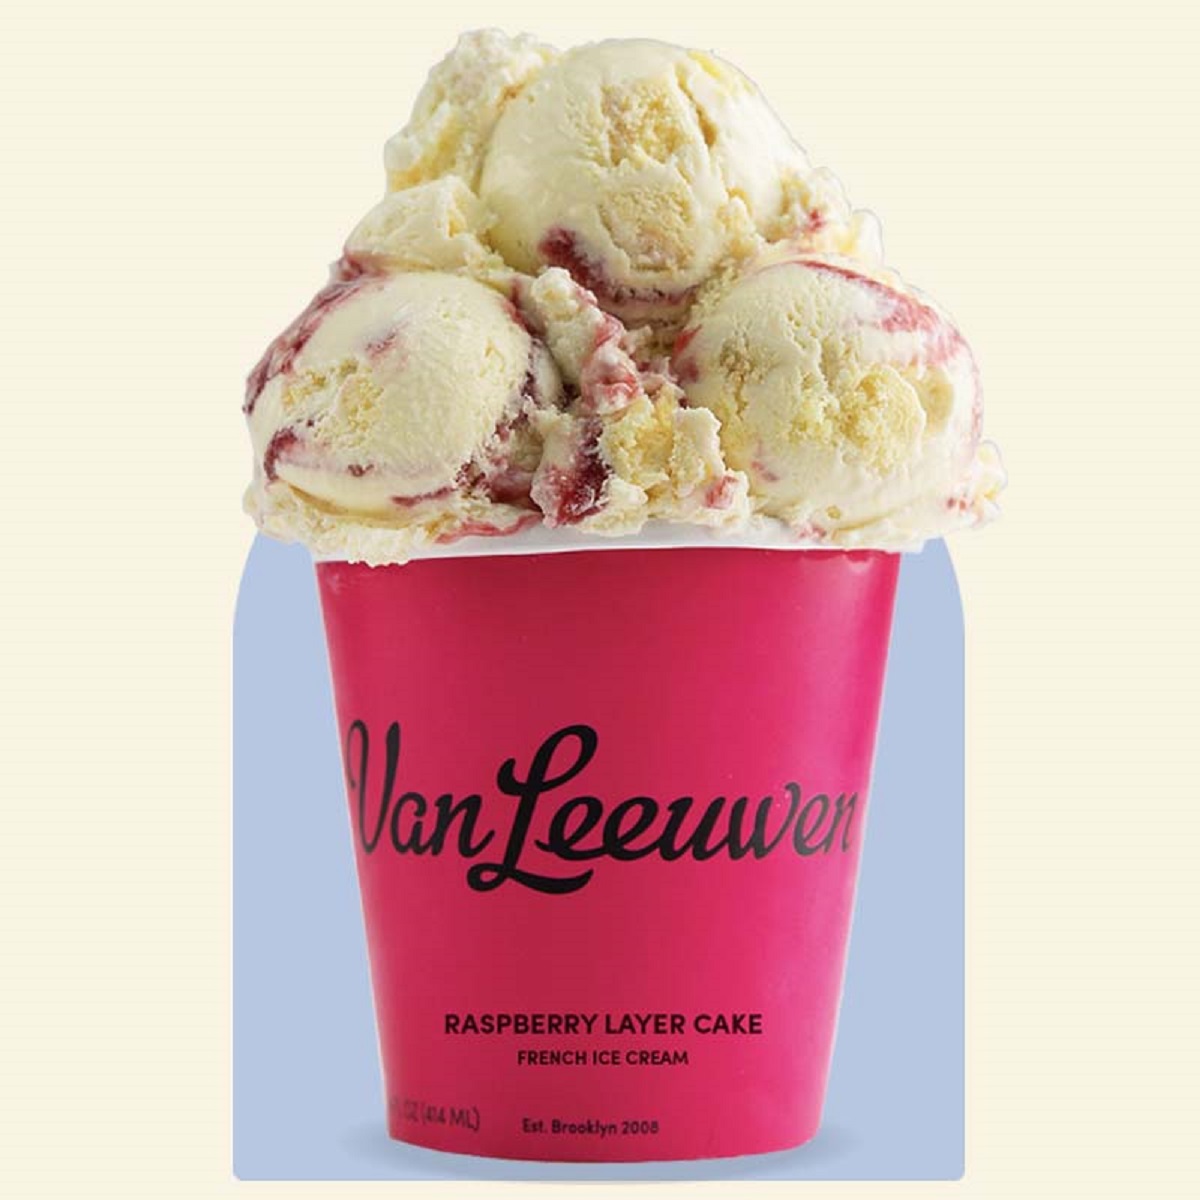 Van Leeuwen Ice Cream to Replace I Heart Yogurt in Inwood Village